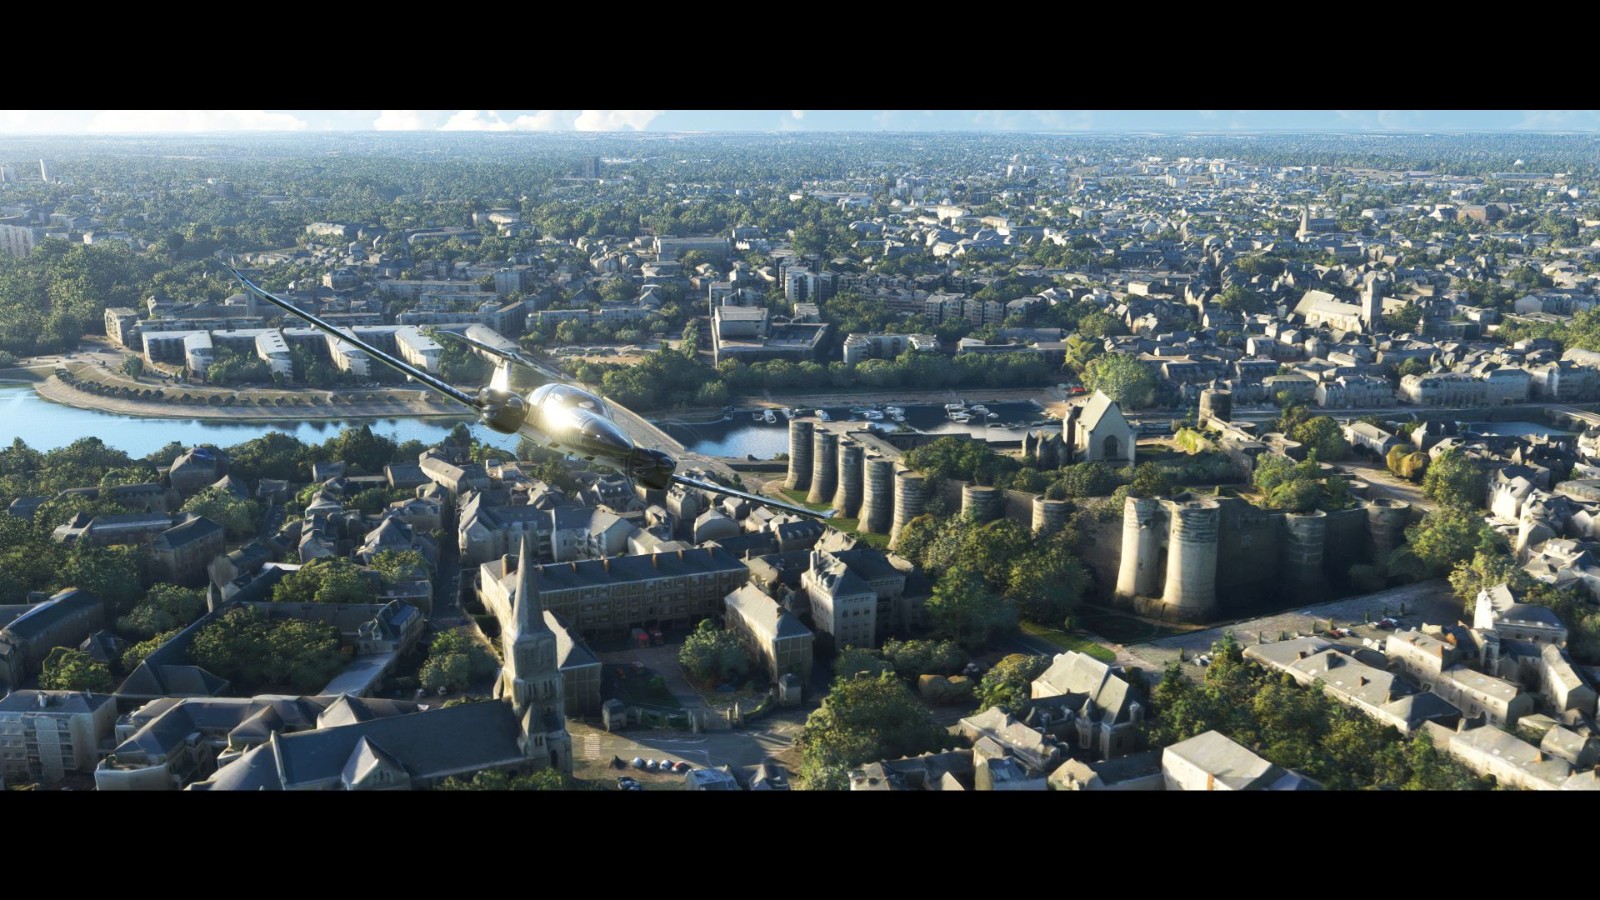 《微軟飛行模擬》更新5個美麗法國城市和經典機型